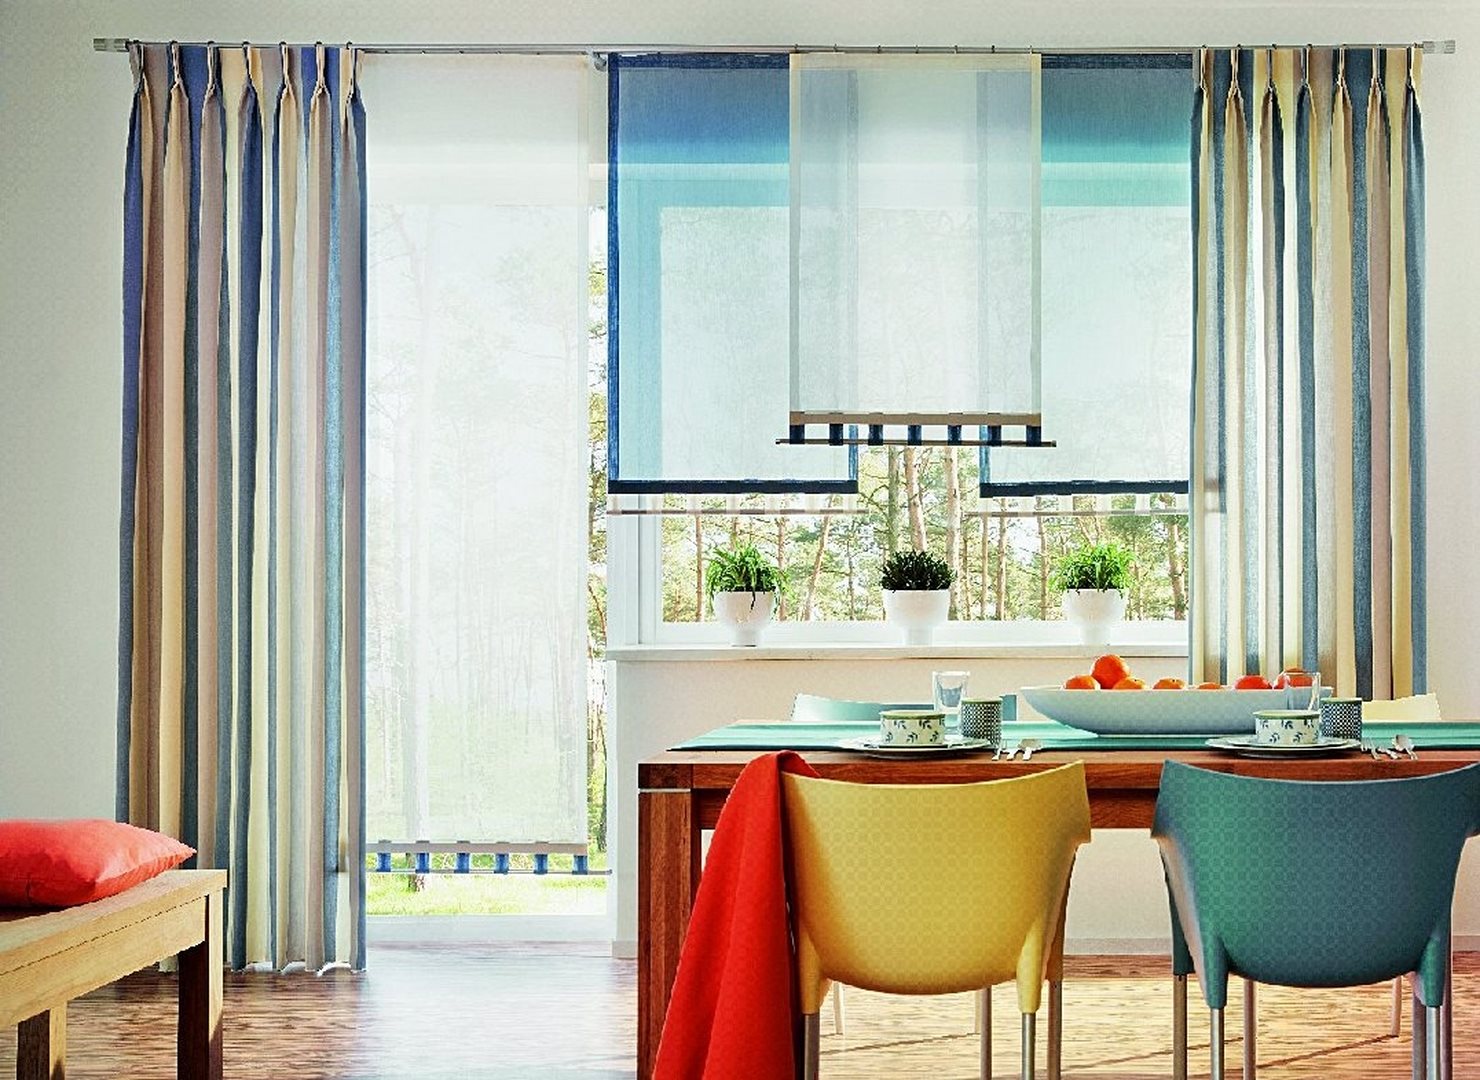  окна на кухне в современном стиле с короткими шторами - фото